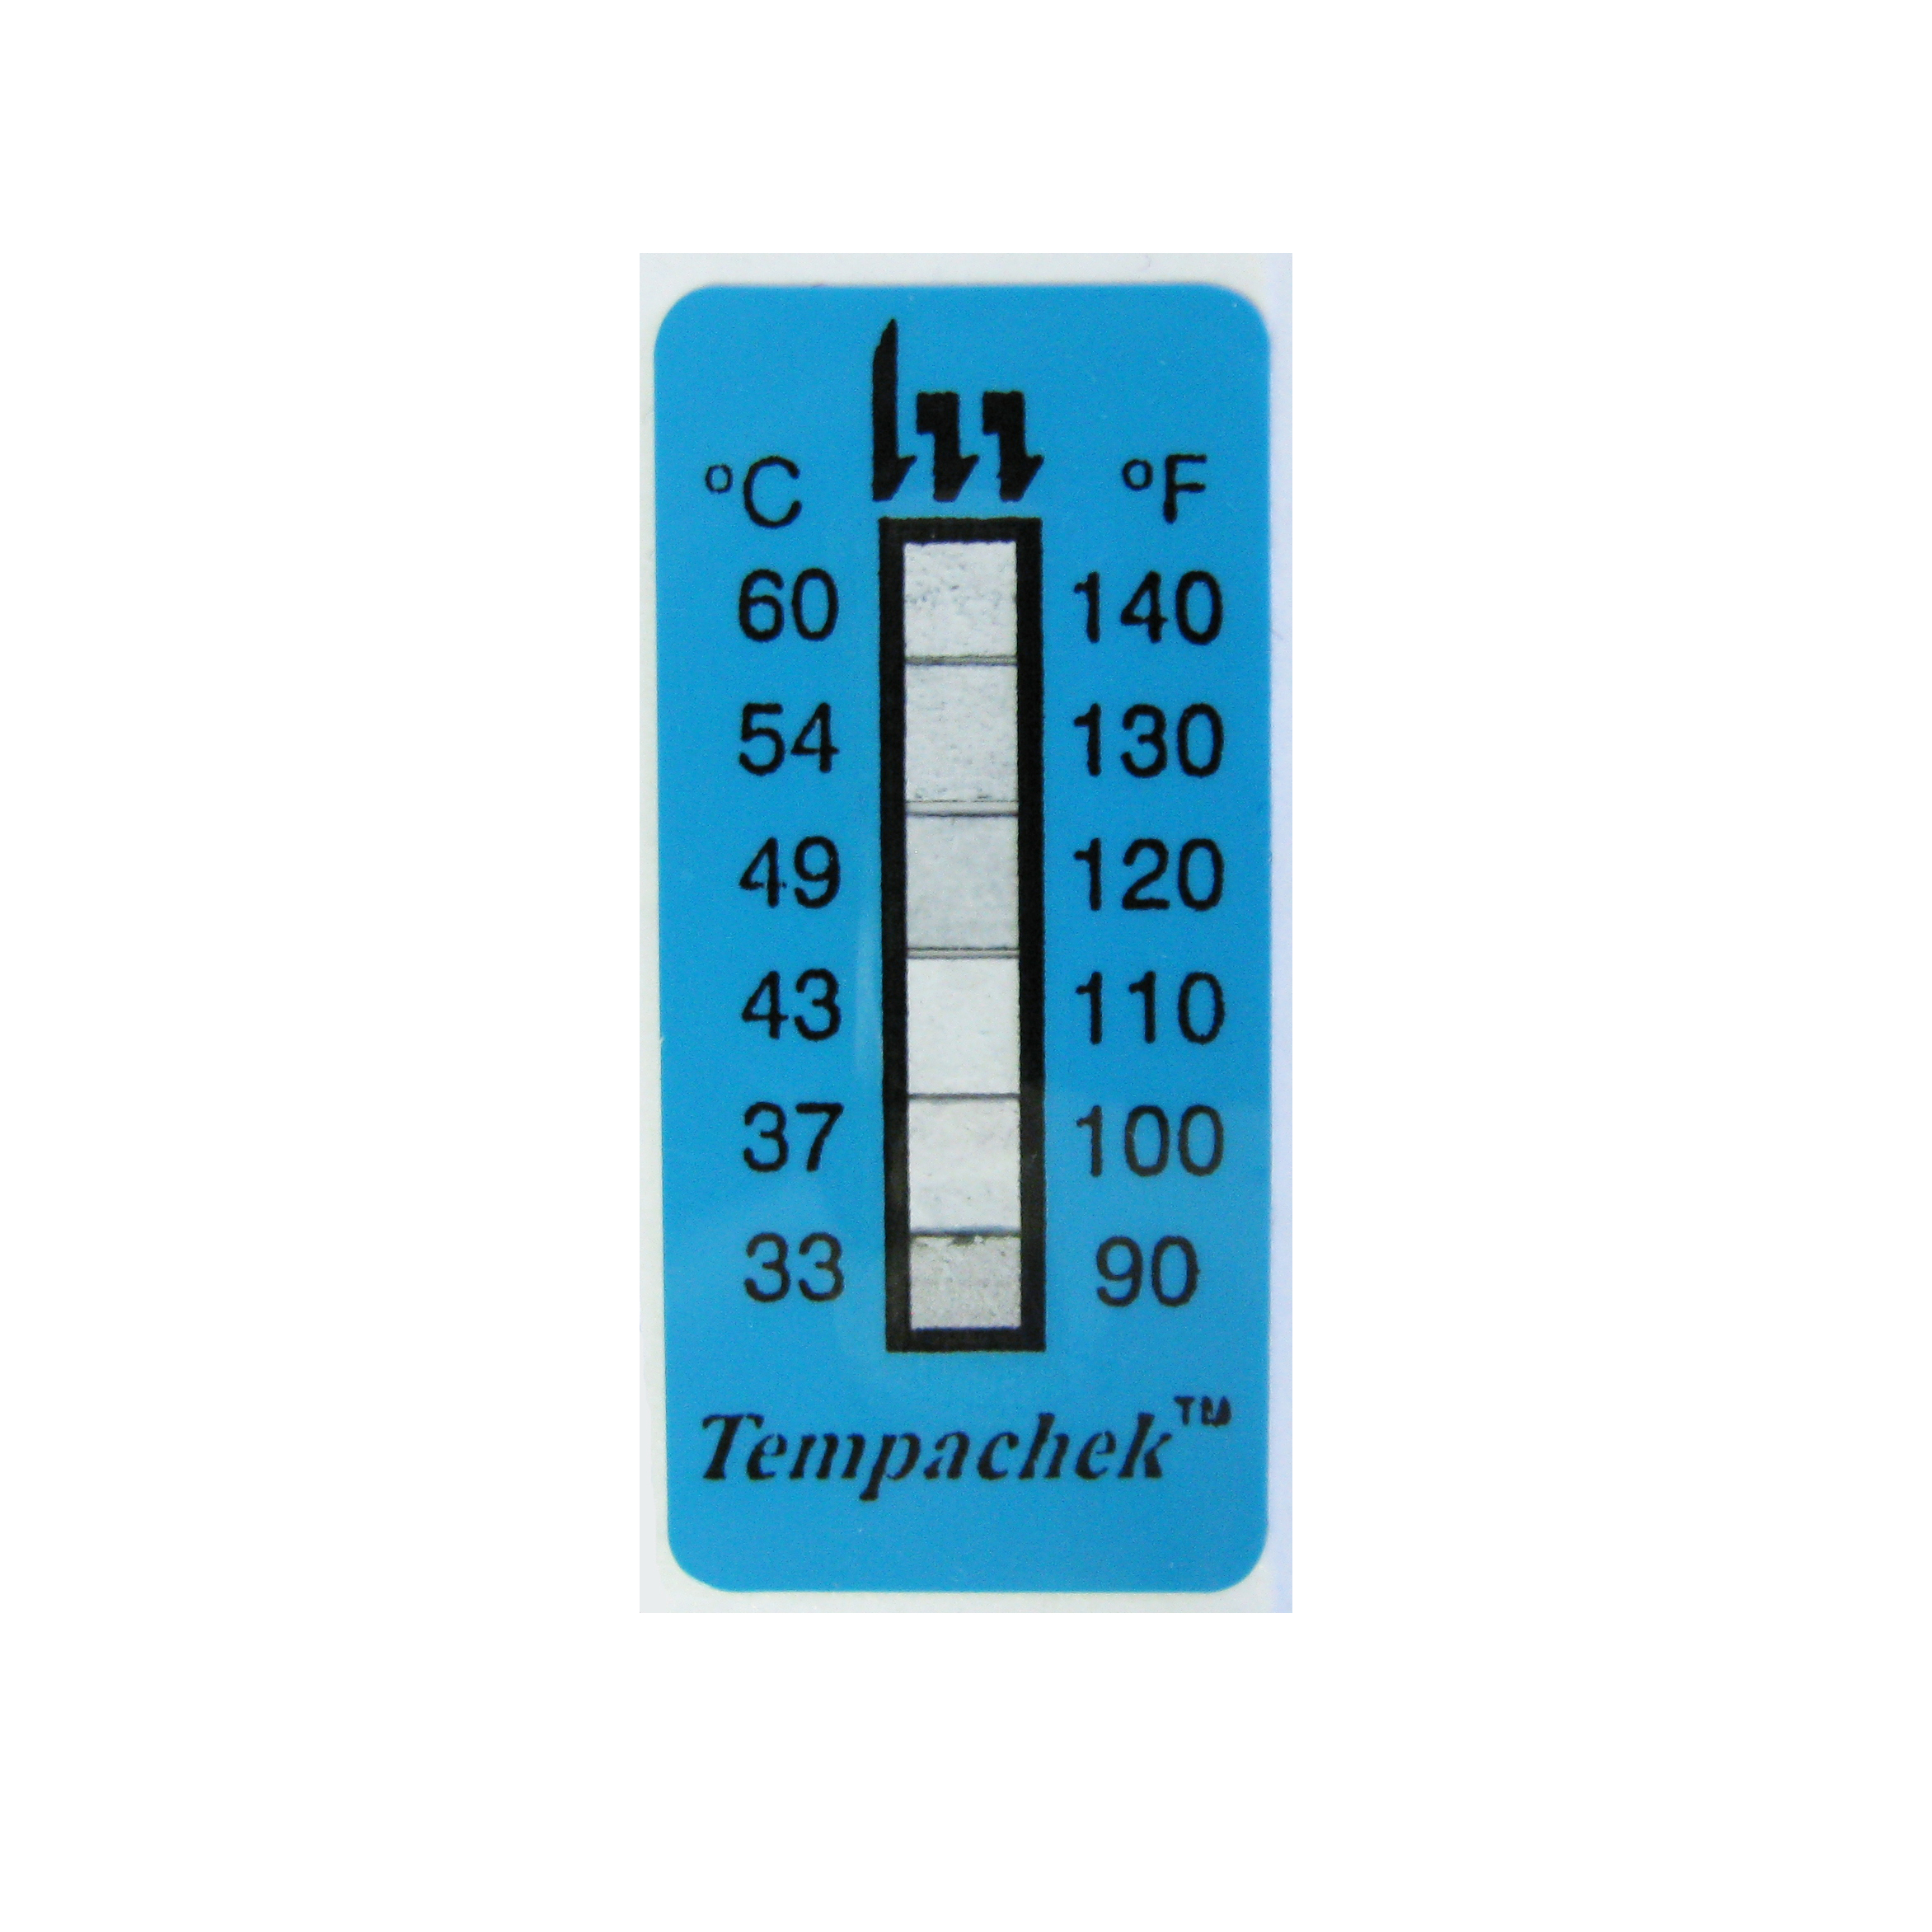 Oil Temperature Gauge - CPYR, Temperature Monitor